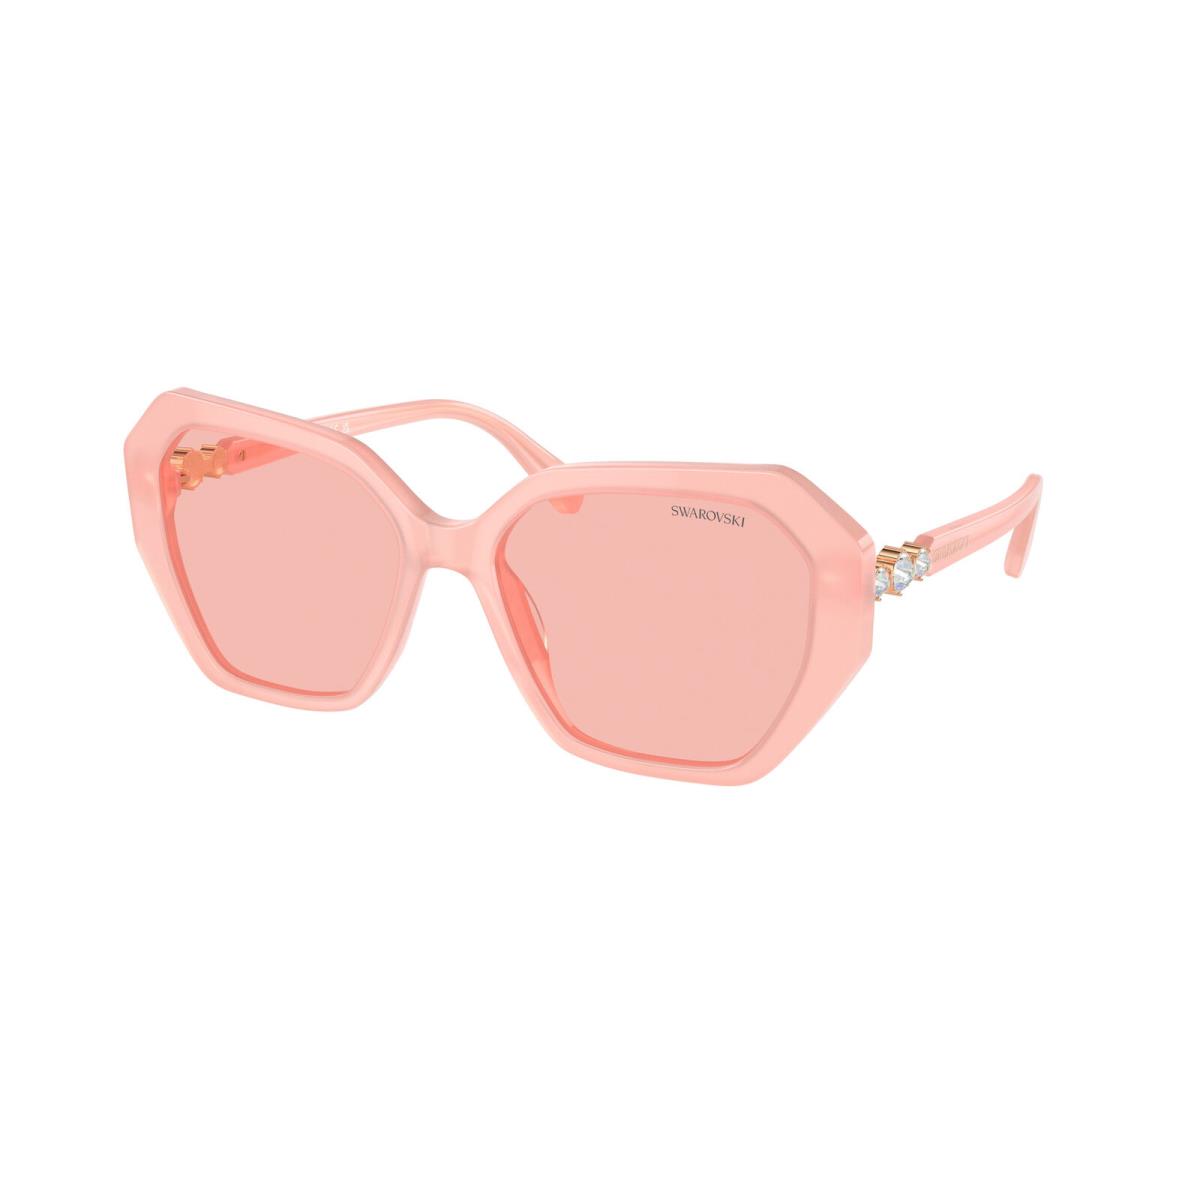 Swarovski SK 6017 Pink Light Pink 1041/5 Sunglasses